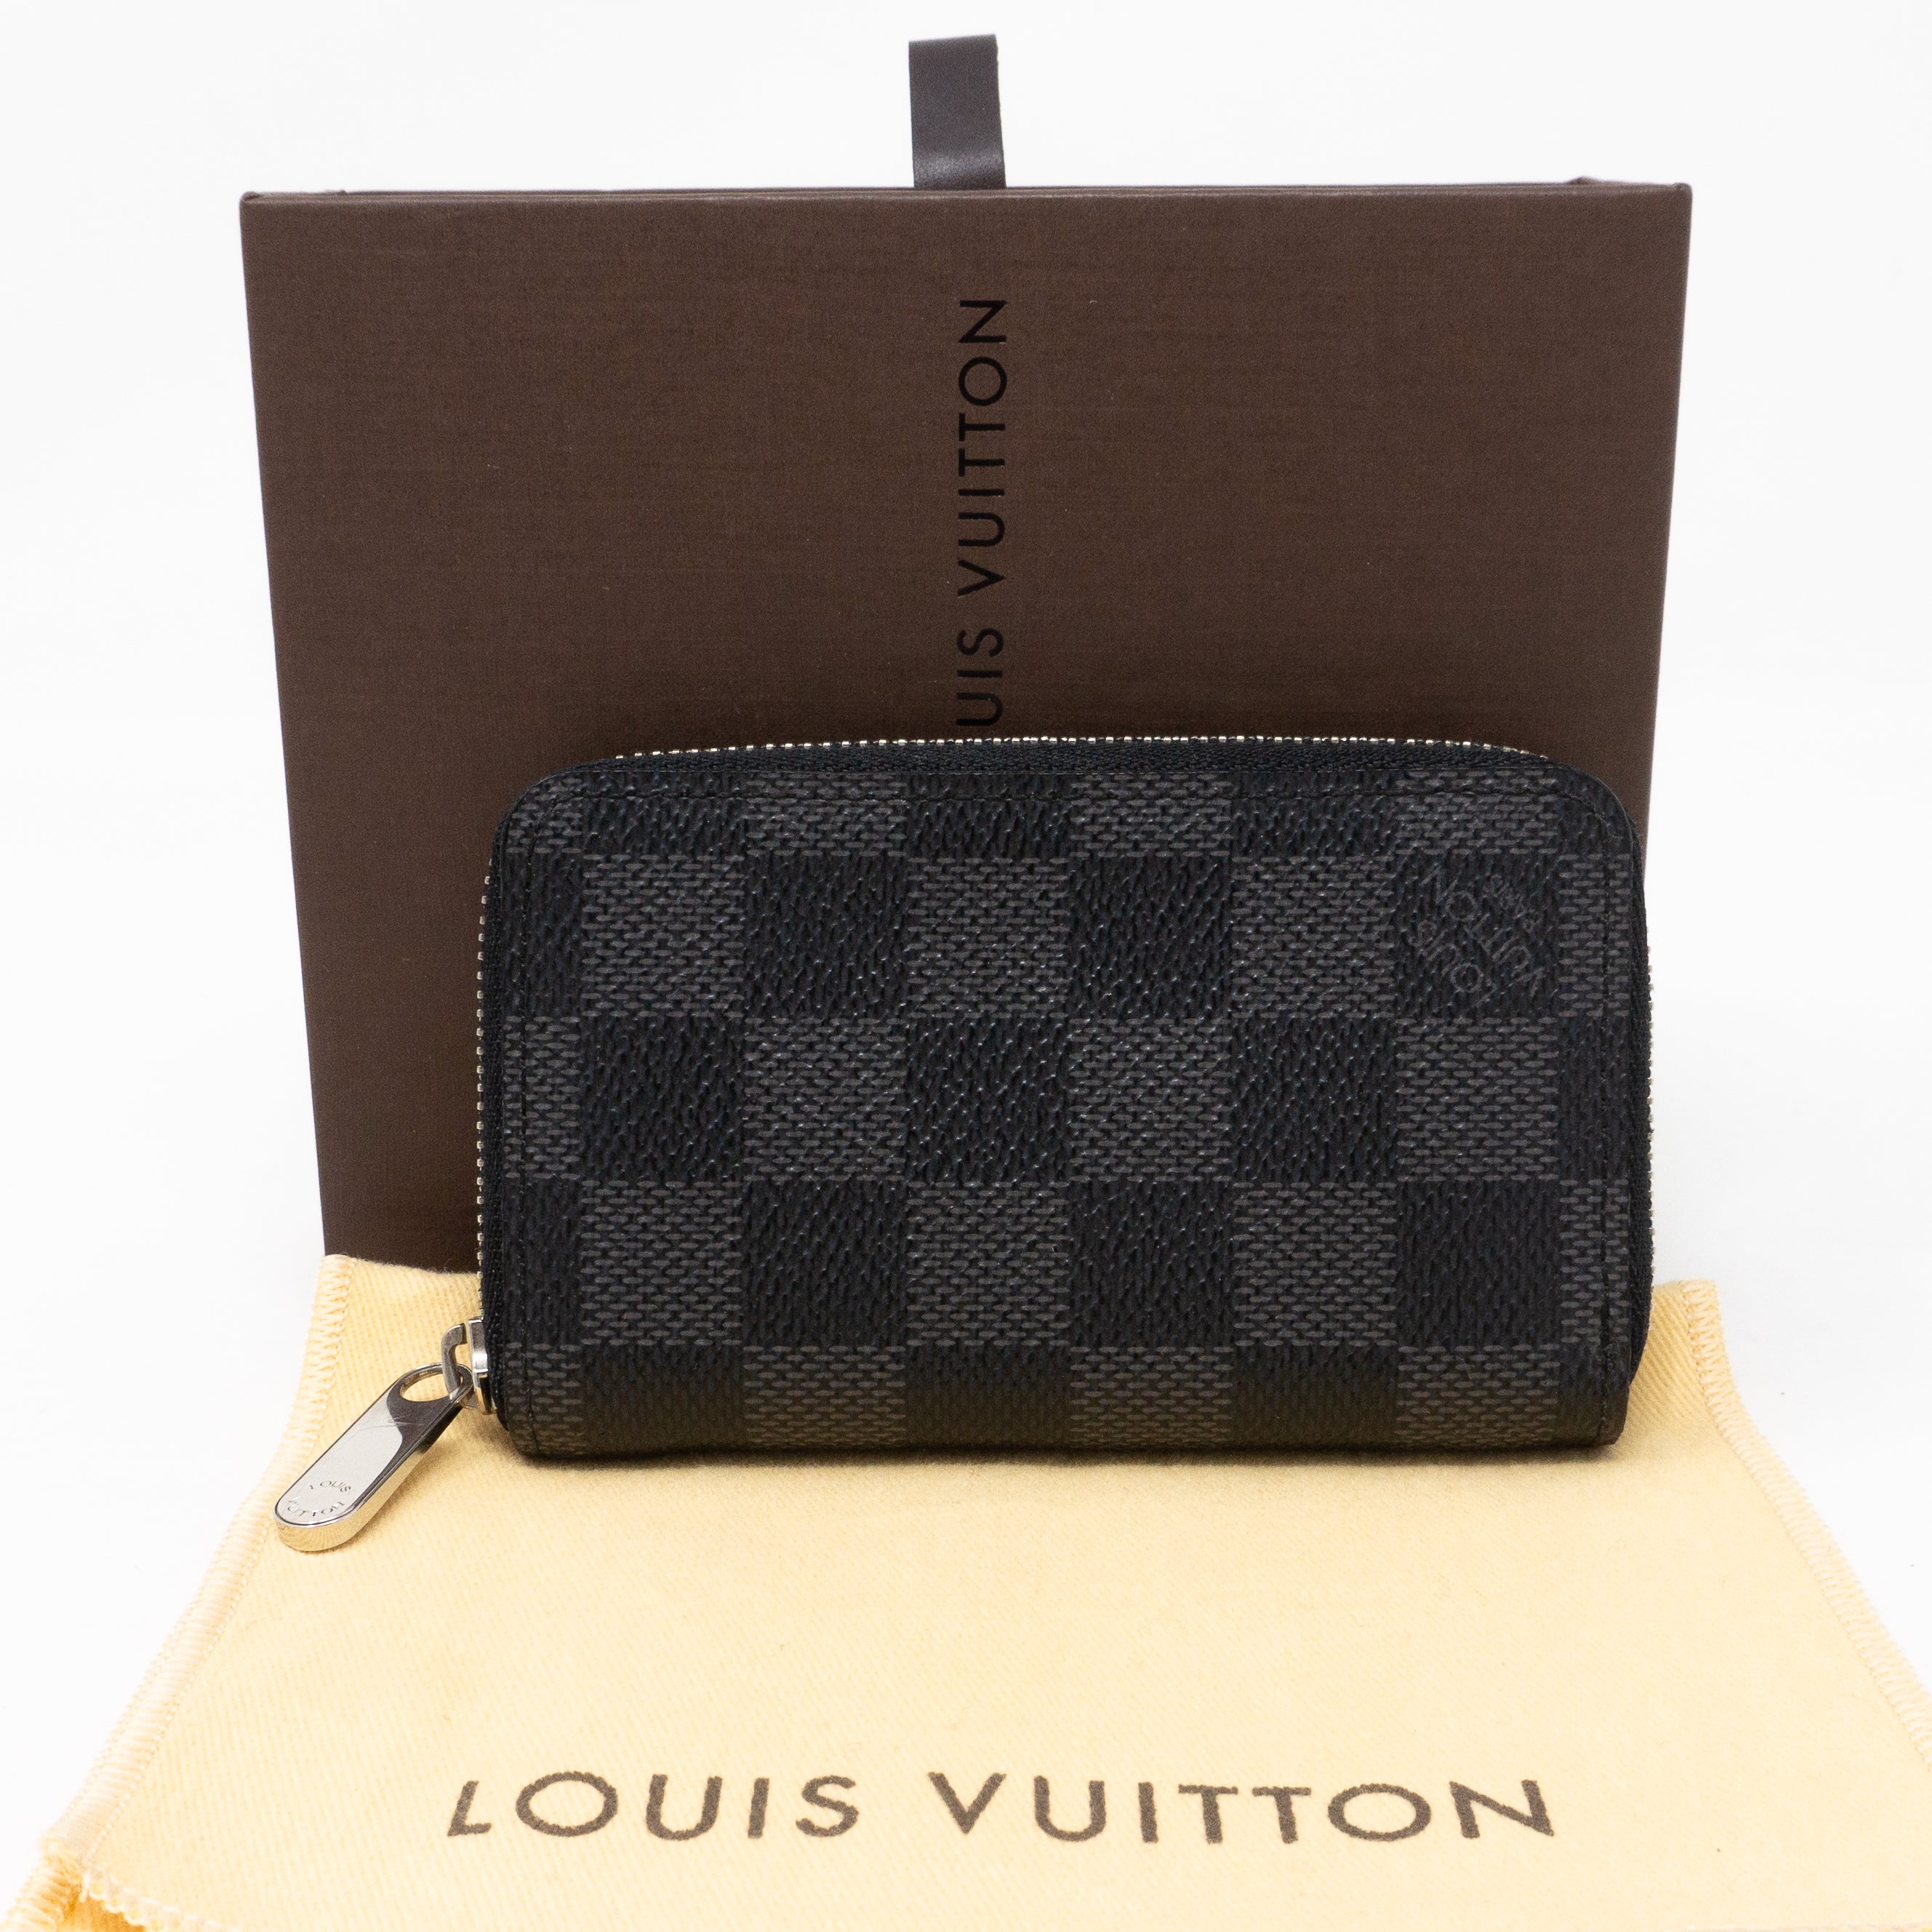 COIN PURSE, ZIPPY COIN PURSE VERTICAL Louis Vuitton. - Bukowskis